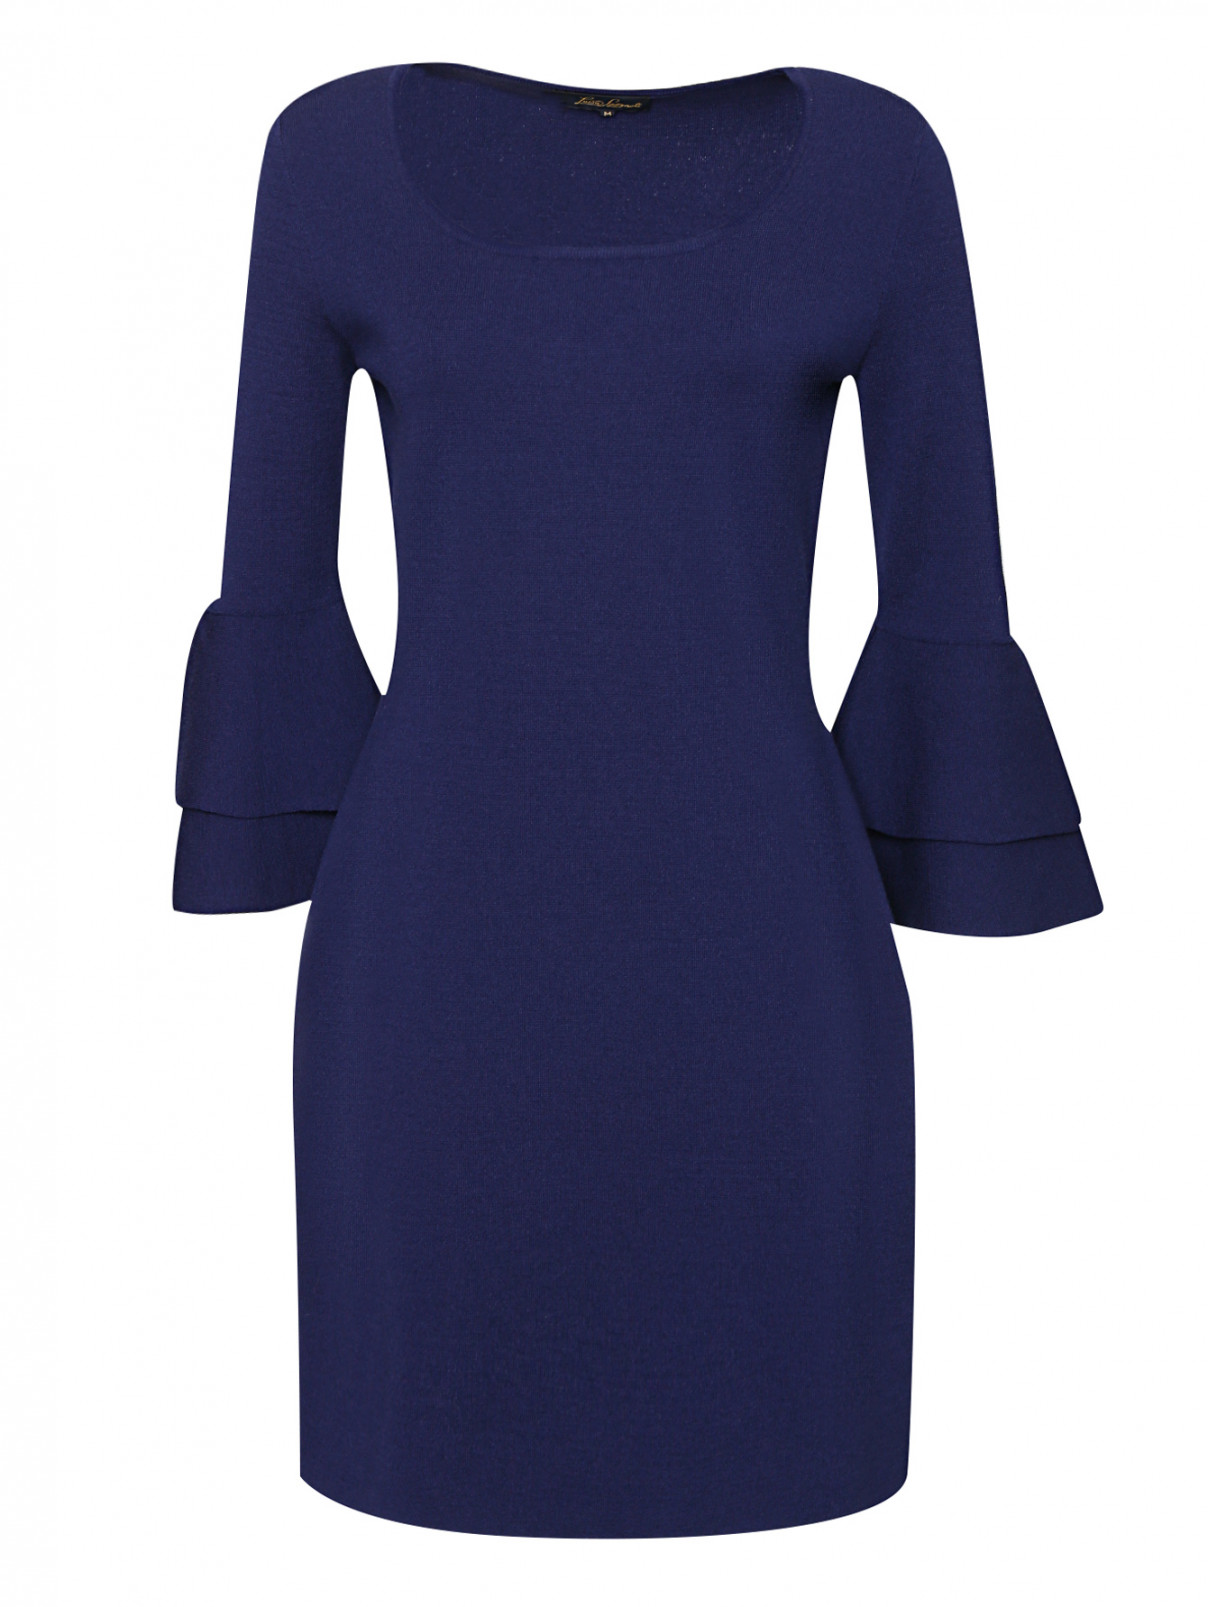 Трикотажное платье из шерсти Luisa Spagnoli  –  Общий вид  – Цвет:  Синий